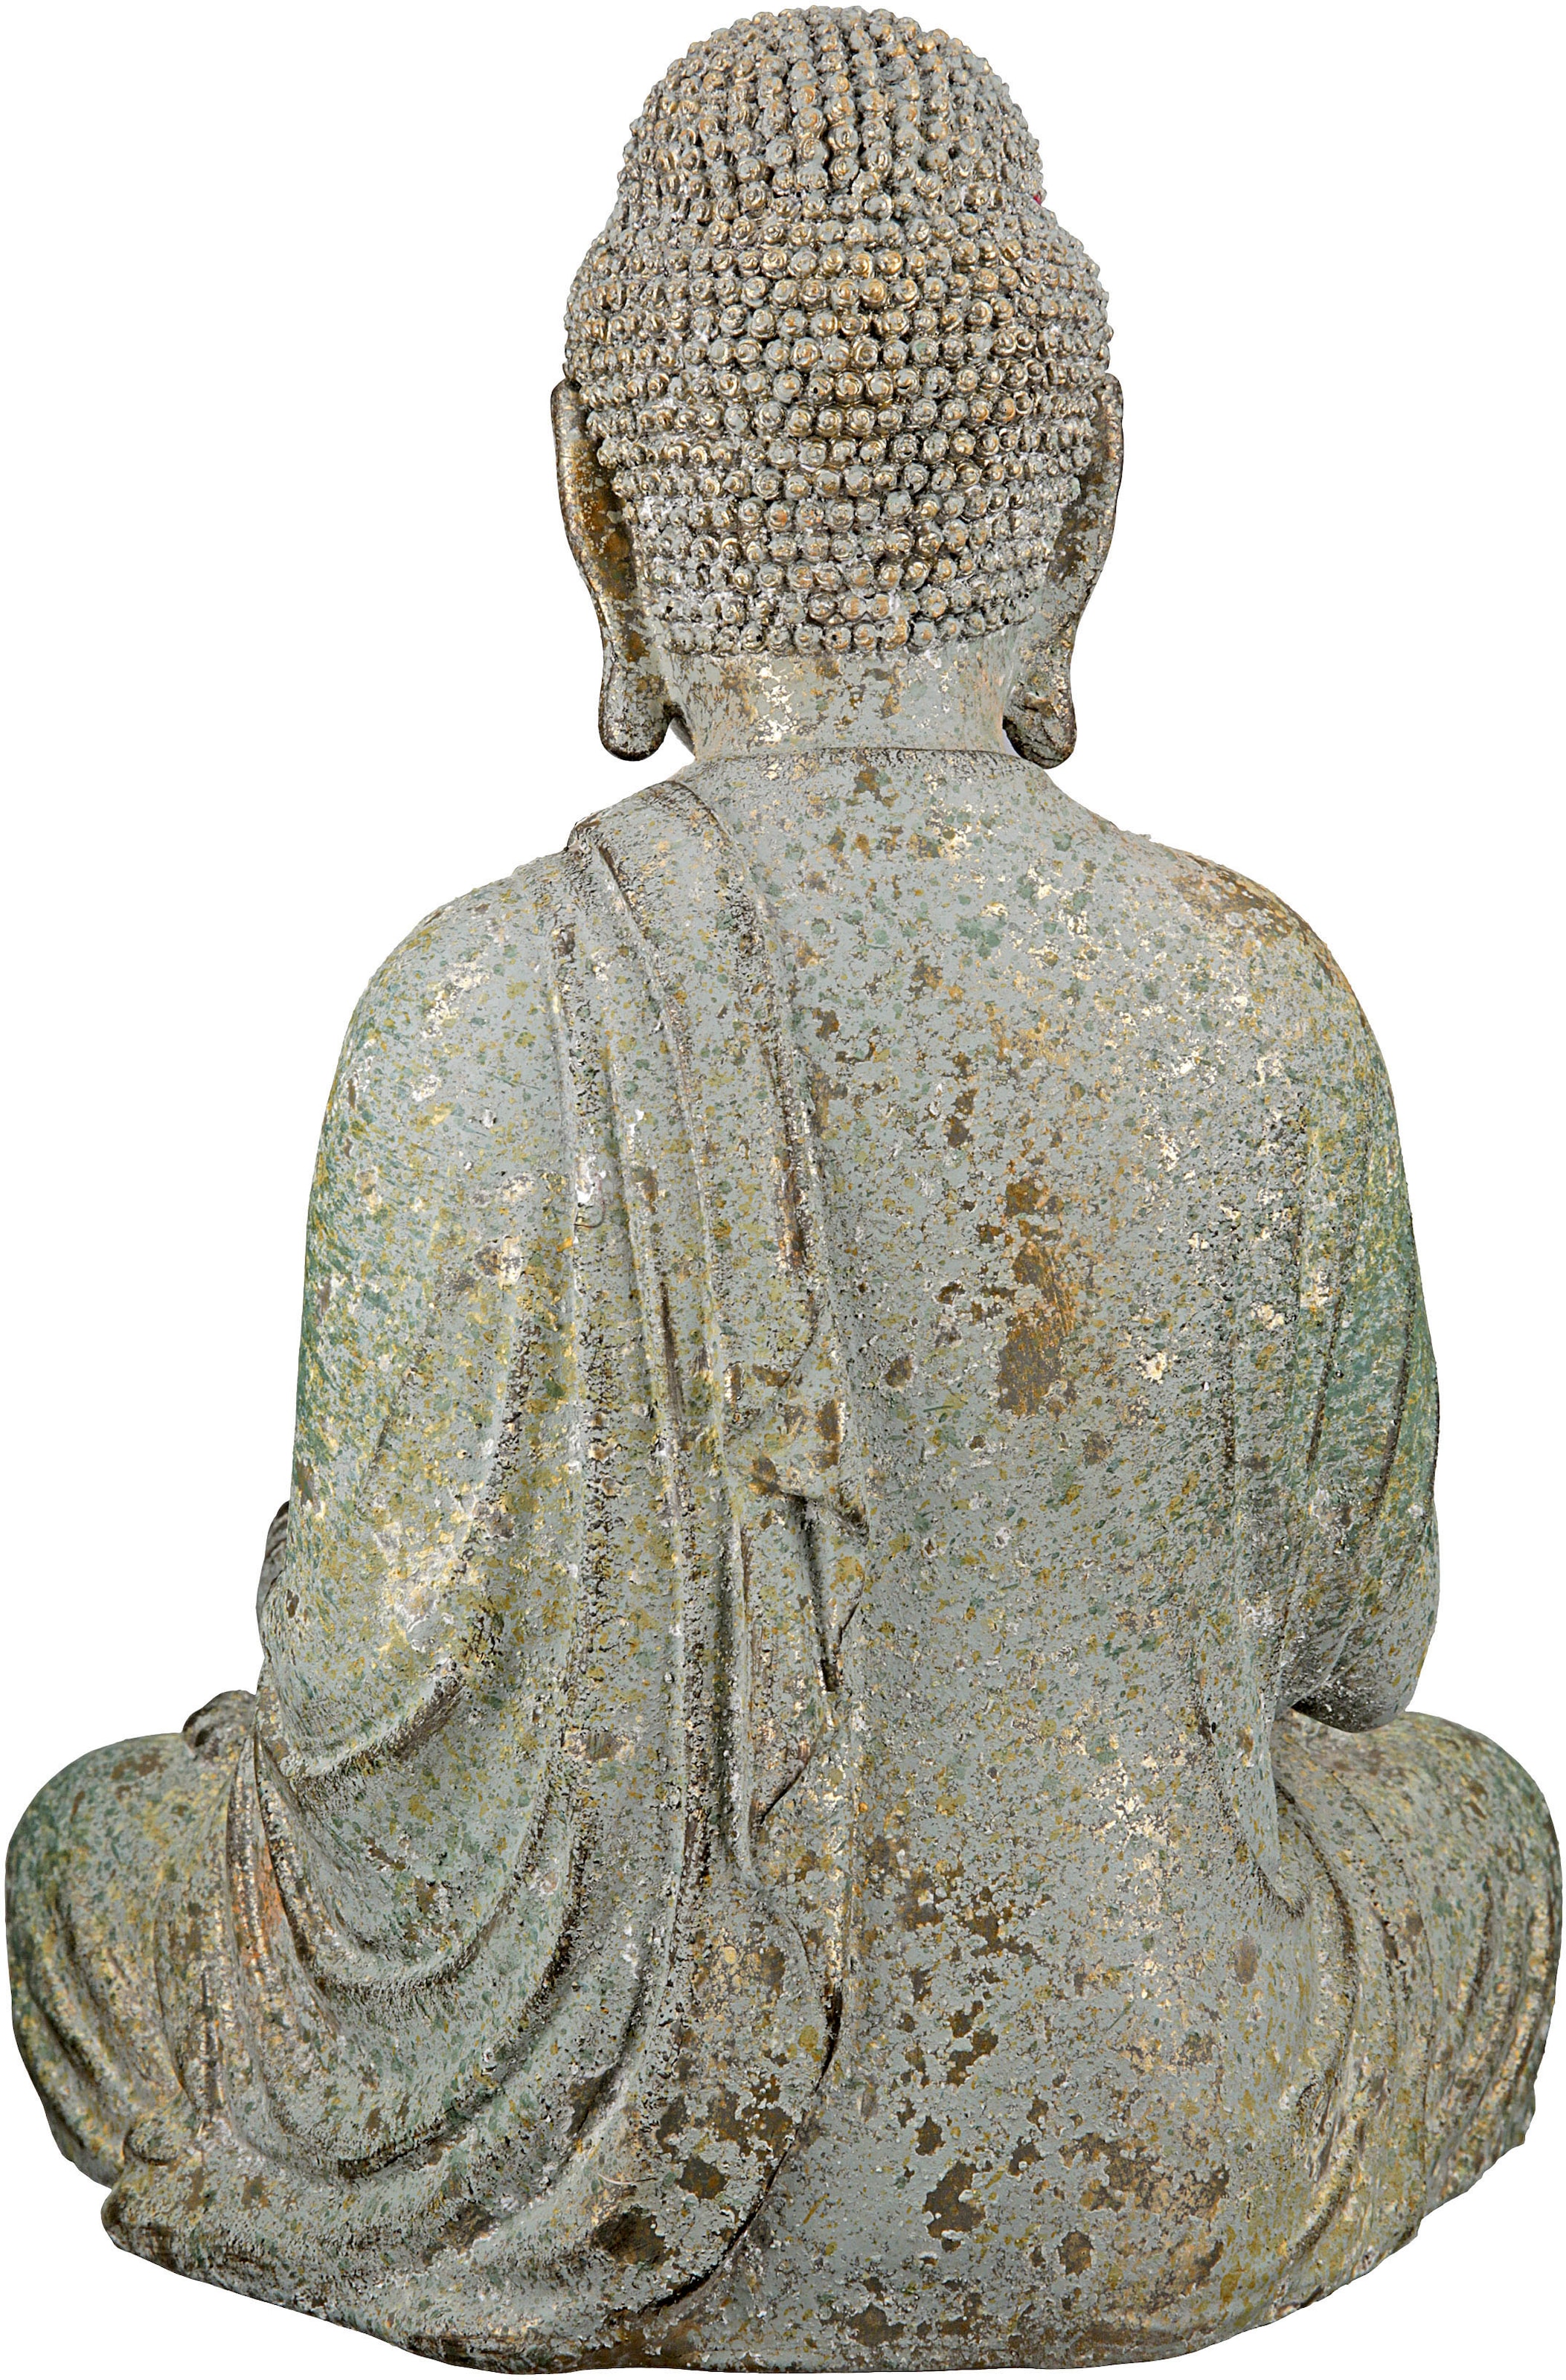 GILDE Buddhafigur günstig Bodhi« kaufen »Buddha